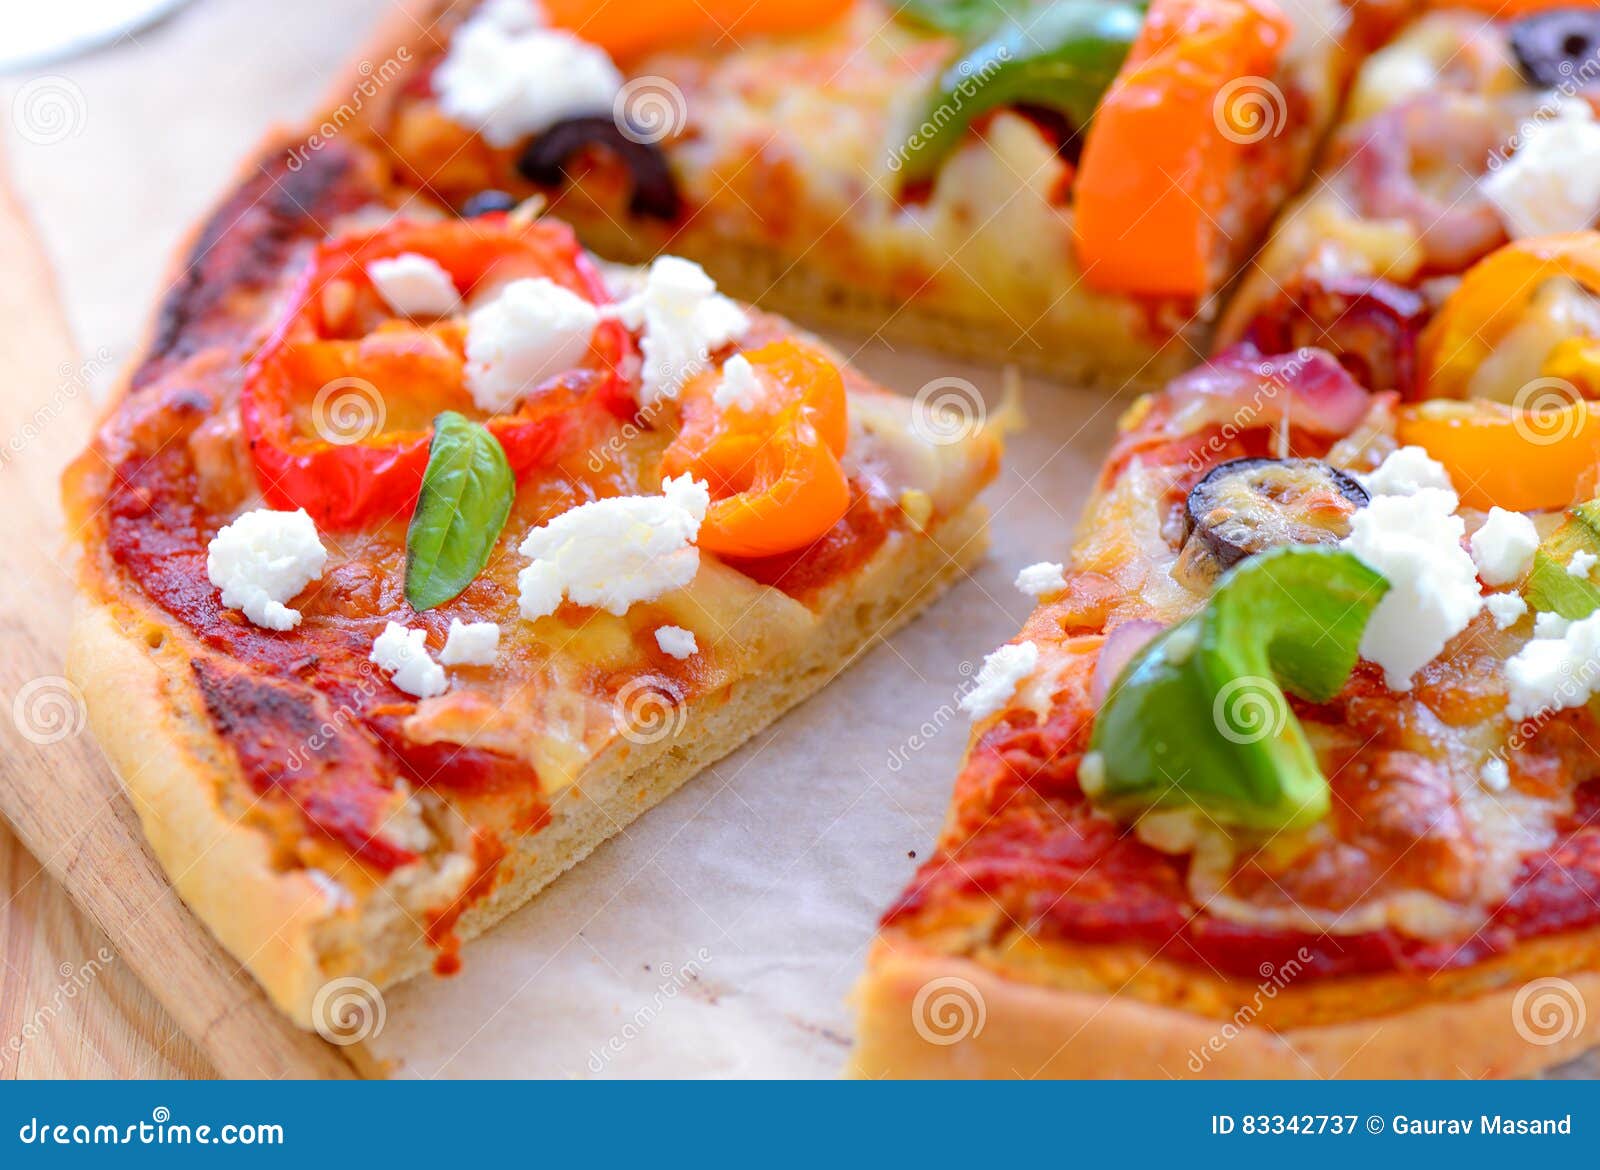 Plakken van de oven de verse Pizza. Dikke korst vegetarische die pizza in oven vers wordt gebakken Het bestaat uit kersentomaten, peper, olijven, basilicum, kaas als bovenste laagjes